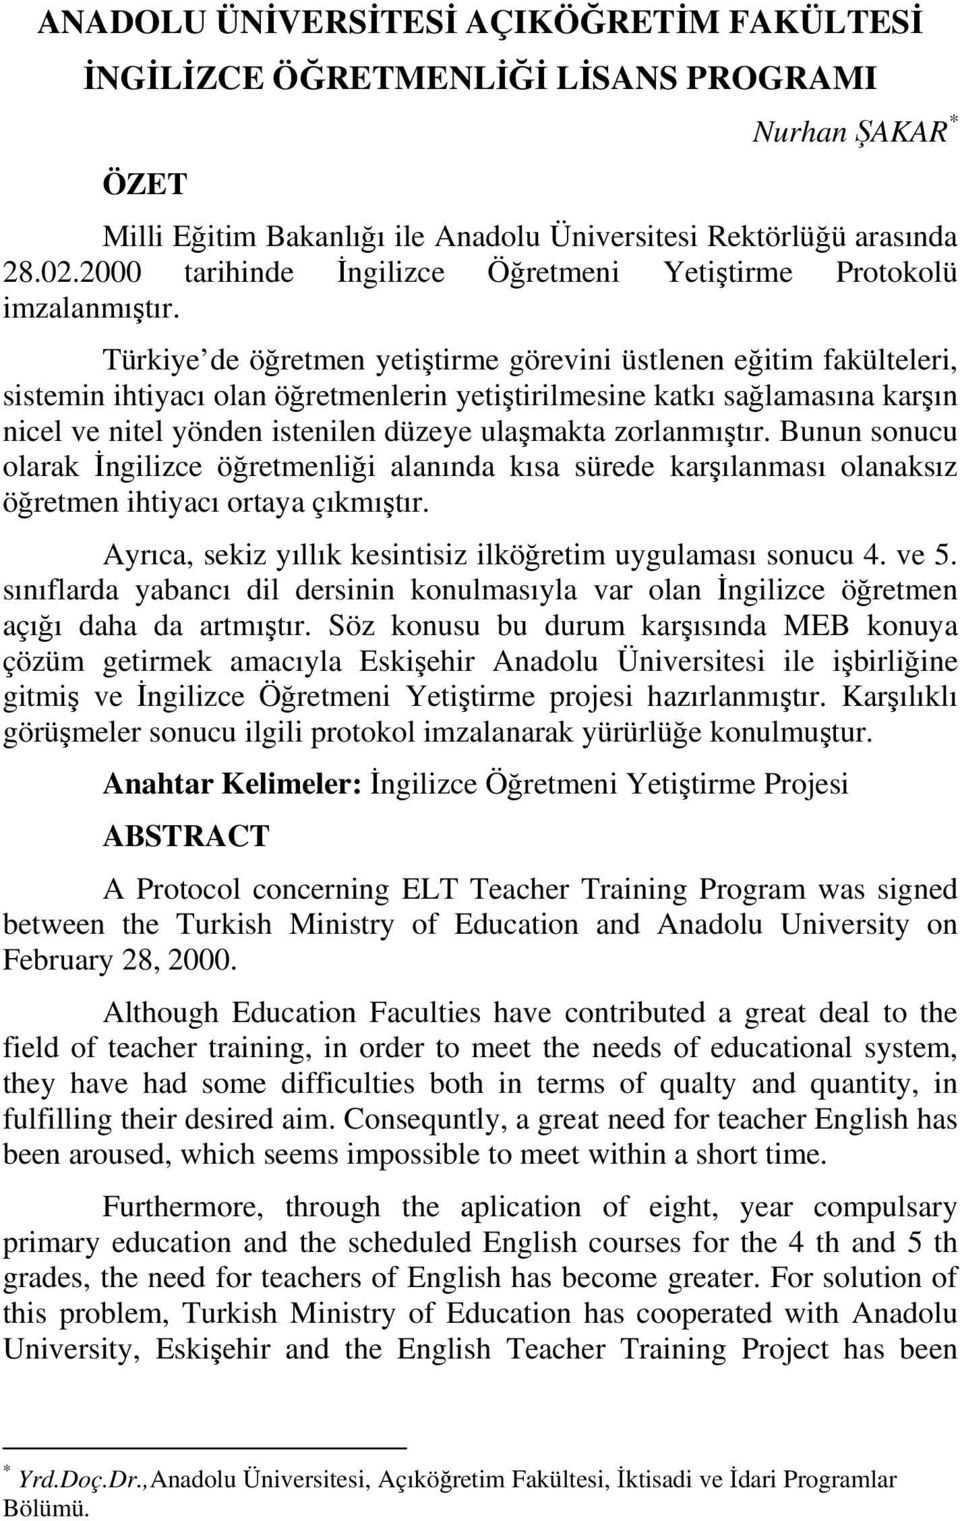 Türkiye de öğretmen yetiştirme görevini üstlenen eğitim fakülteleri, sistemin ihtiyacı olan öğretmenlerin yetiştirilmesine katkı sağlamasına karşın nicel ve nitel yönden istenilen düzeye ulaşmakta